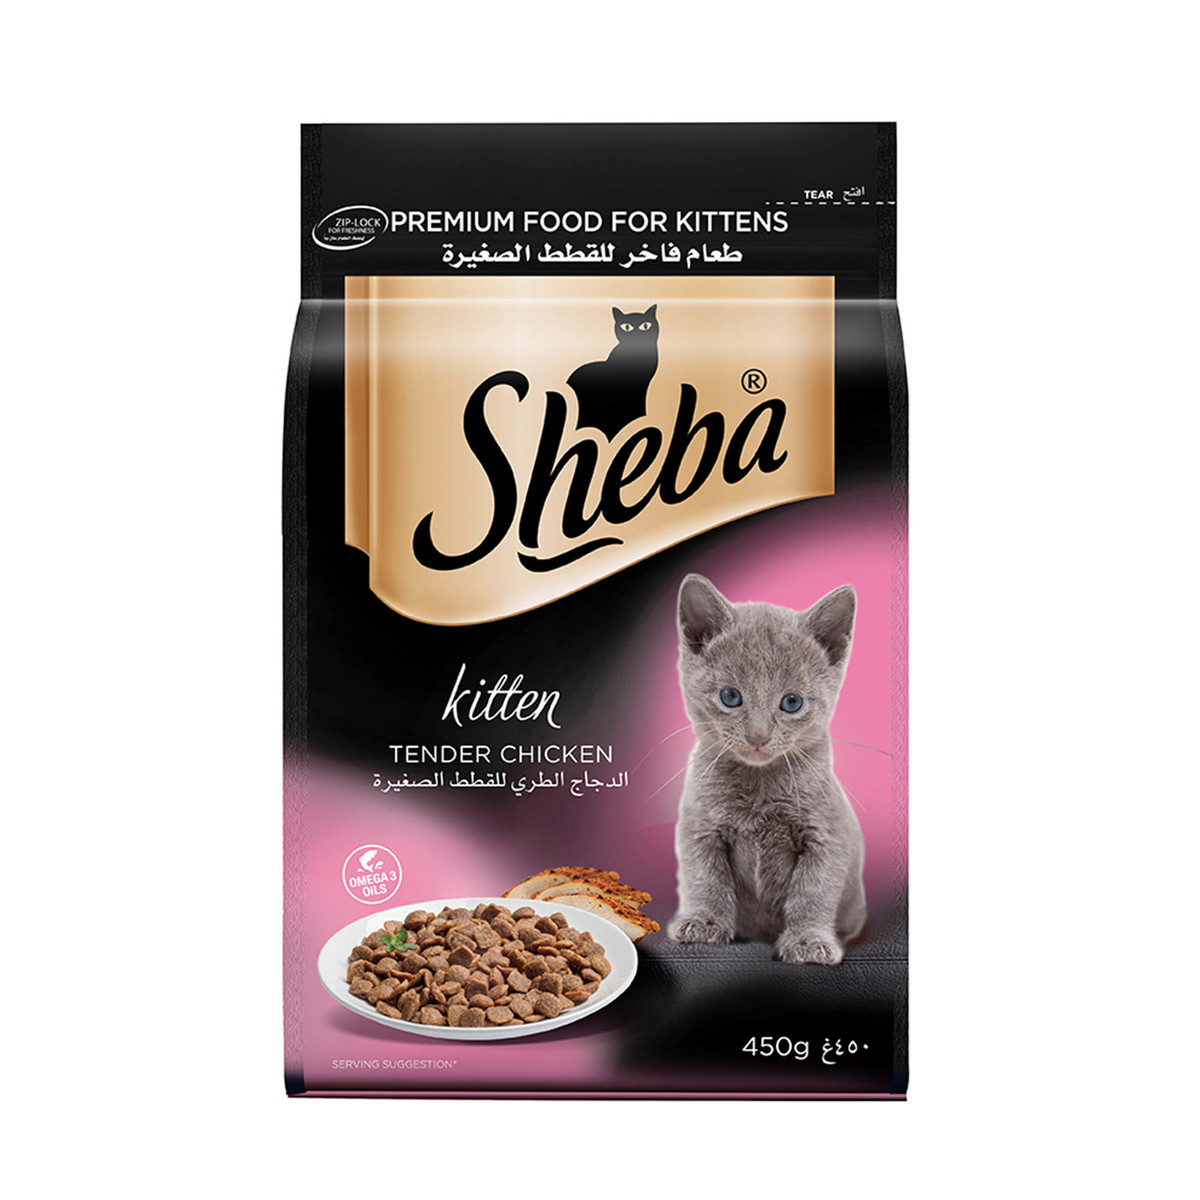 Sheba Kitten Food Tender Chicken 450g